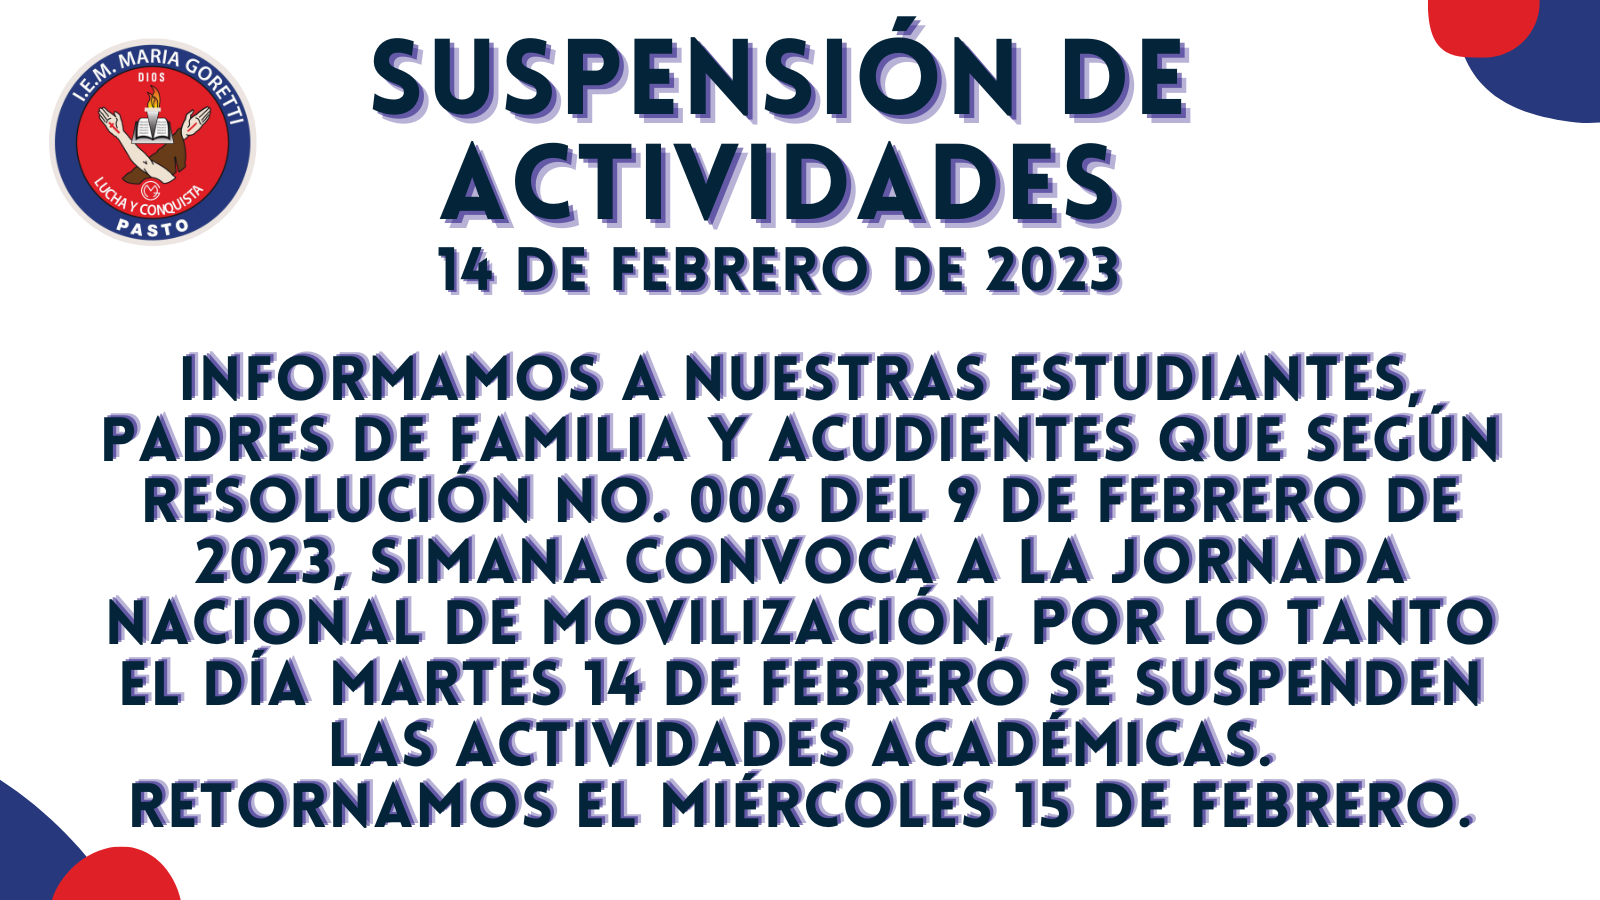 Suspensión de Actividades – 14 de febrero de 2023 |